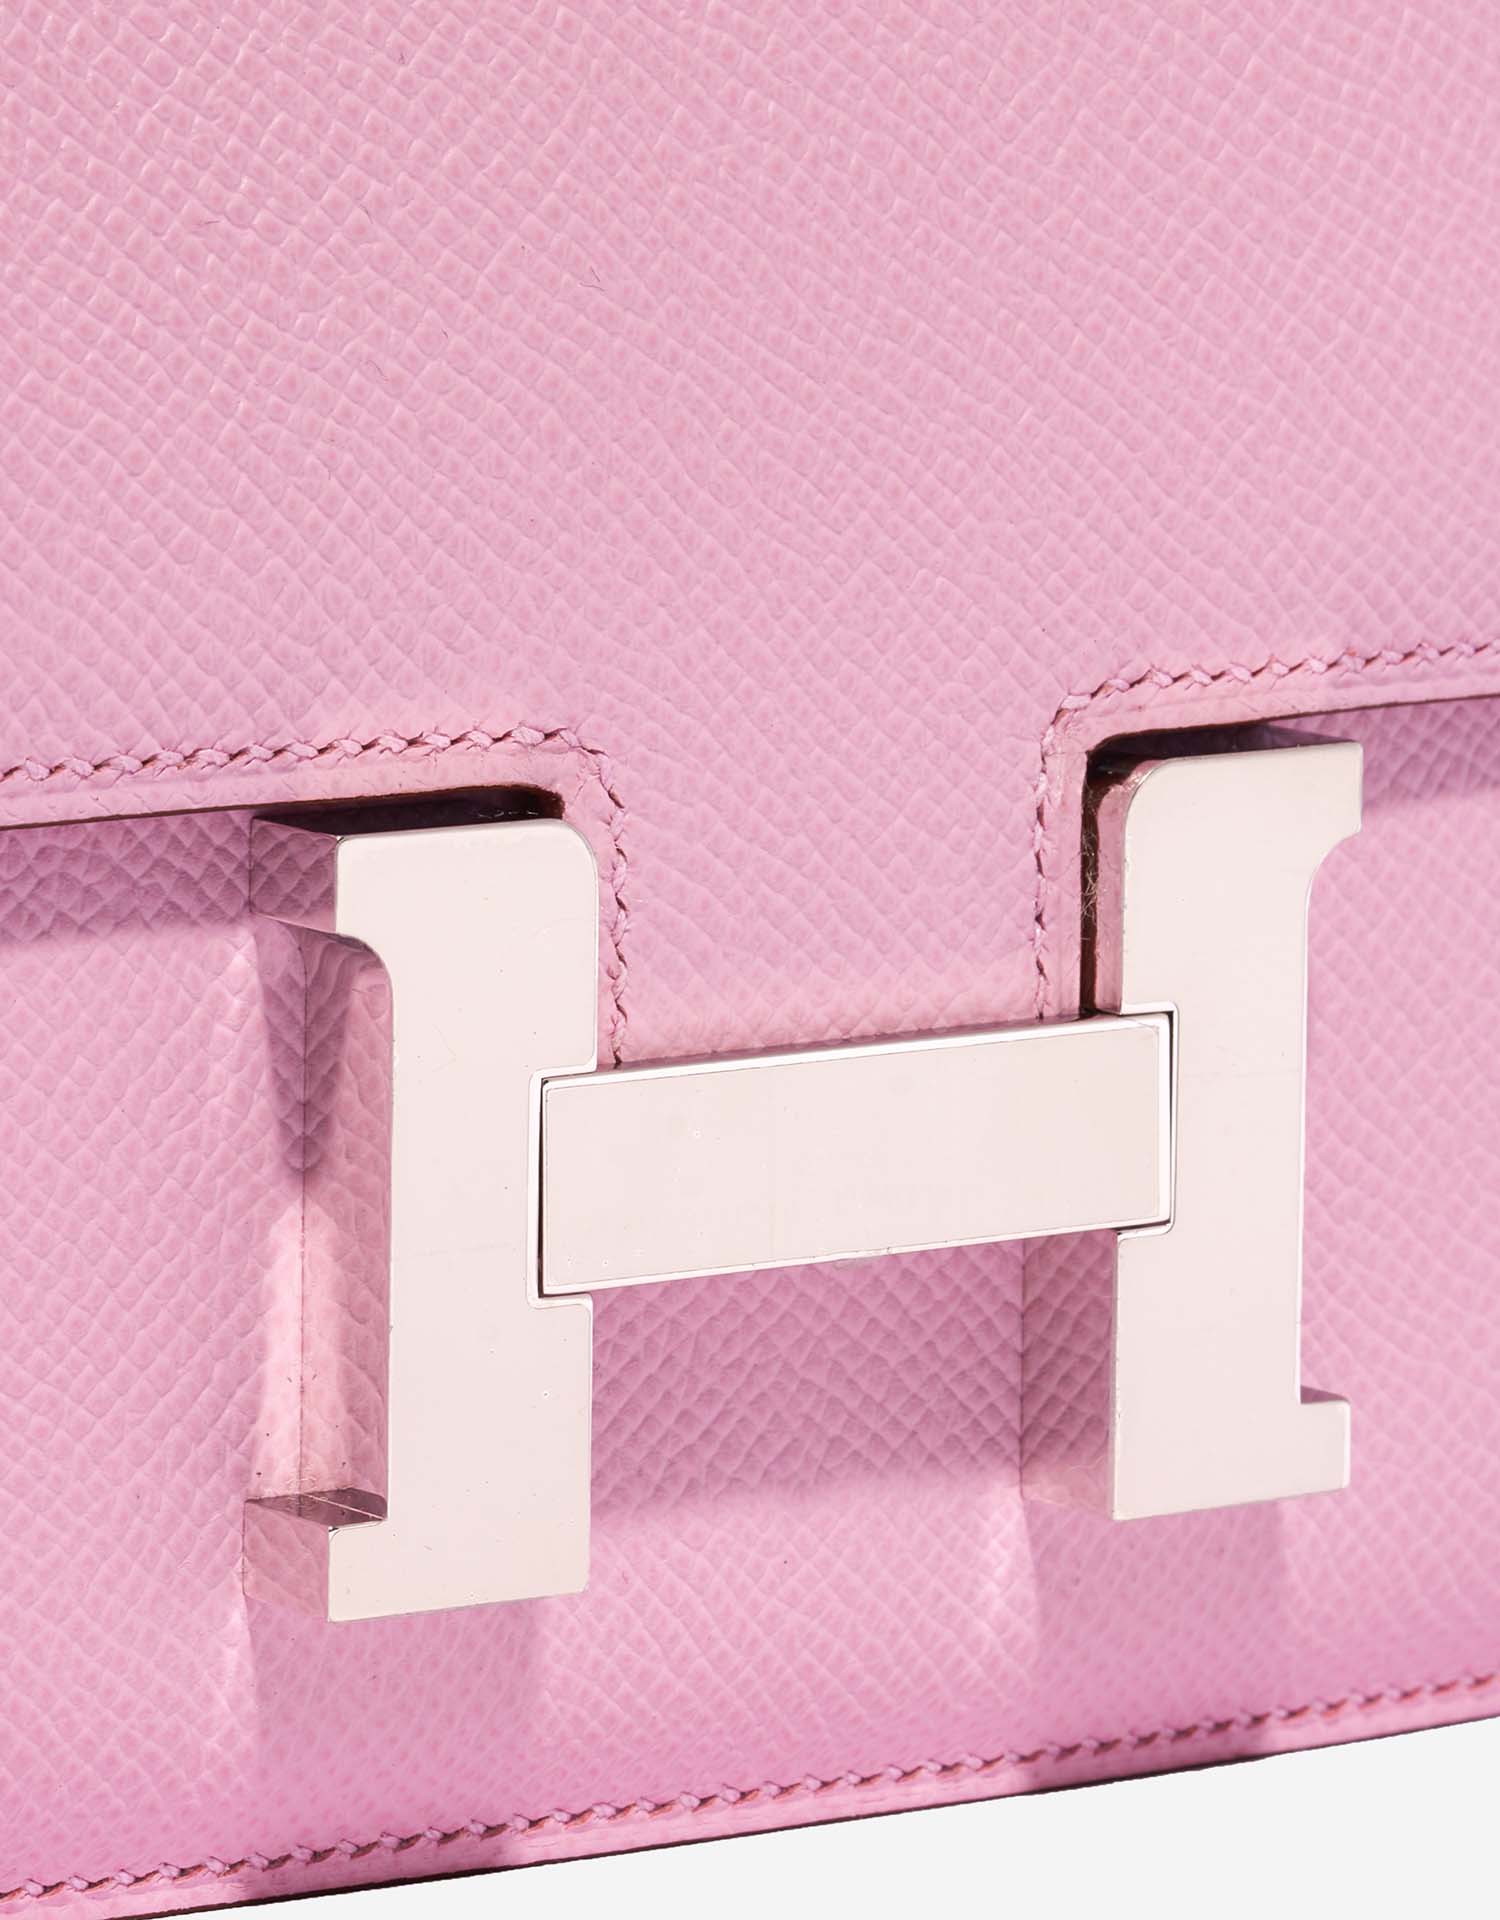 Hermès Constance 18 MauveSylvestre Verschluss-System | Verkaufen Sie Ihre Designer-Tasche auf Saclab.com